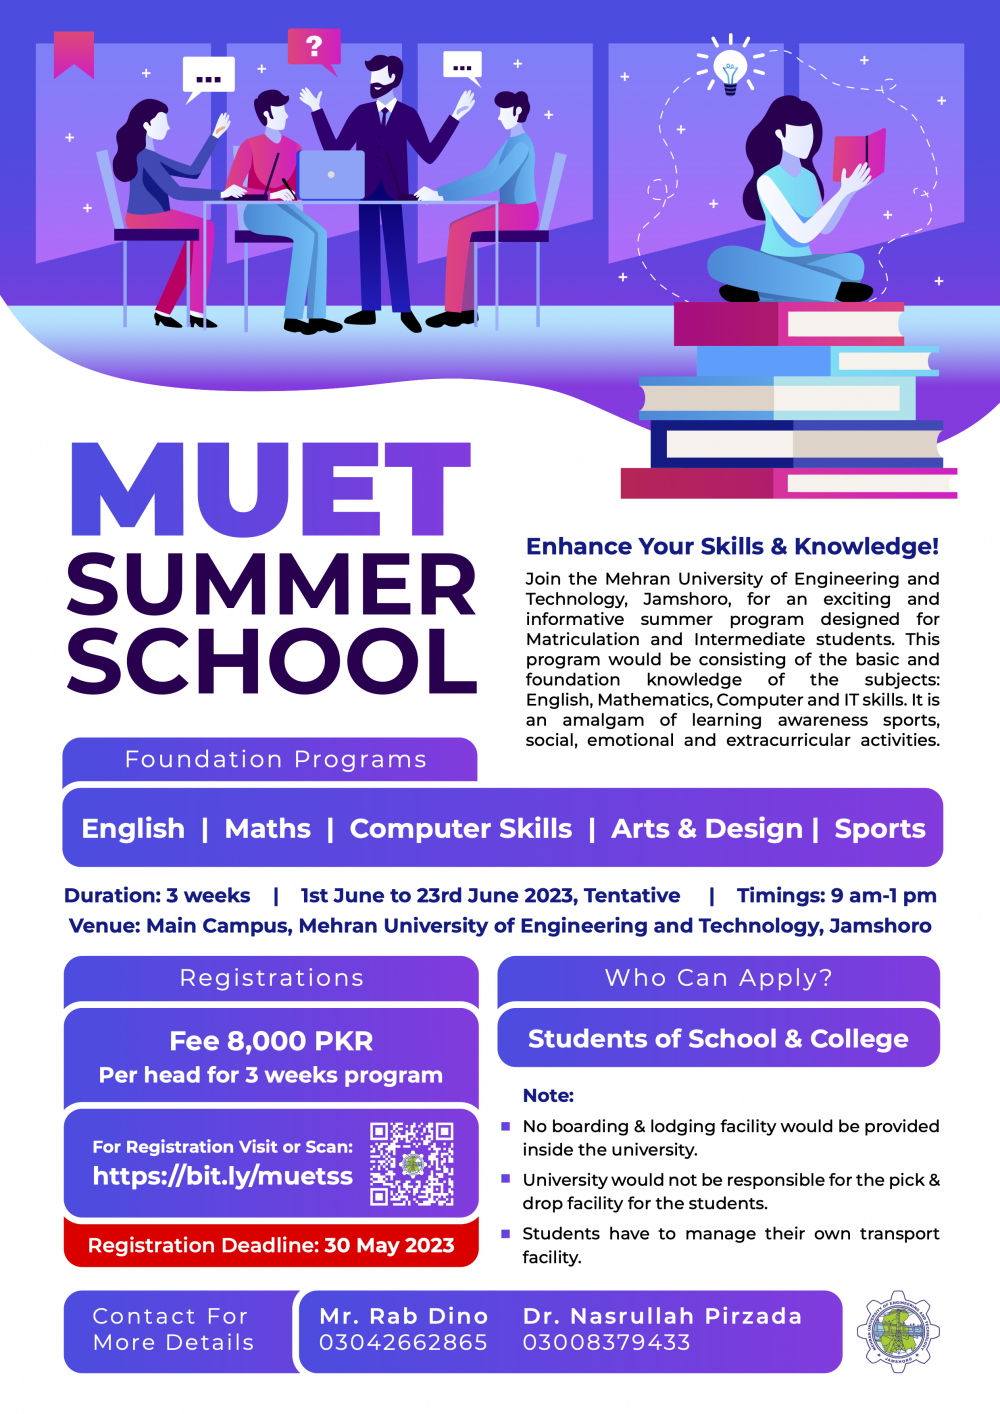 MUET Summer School